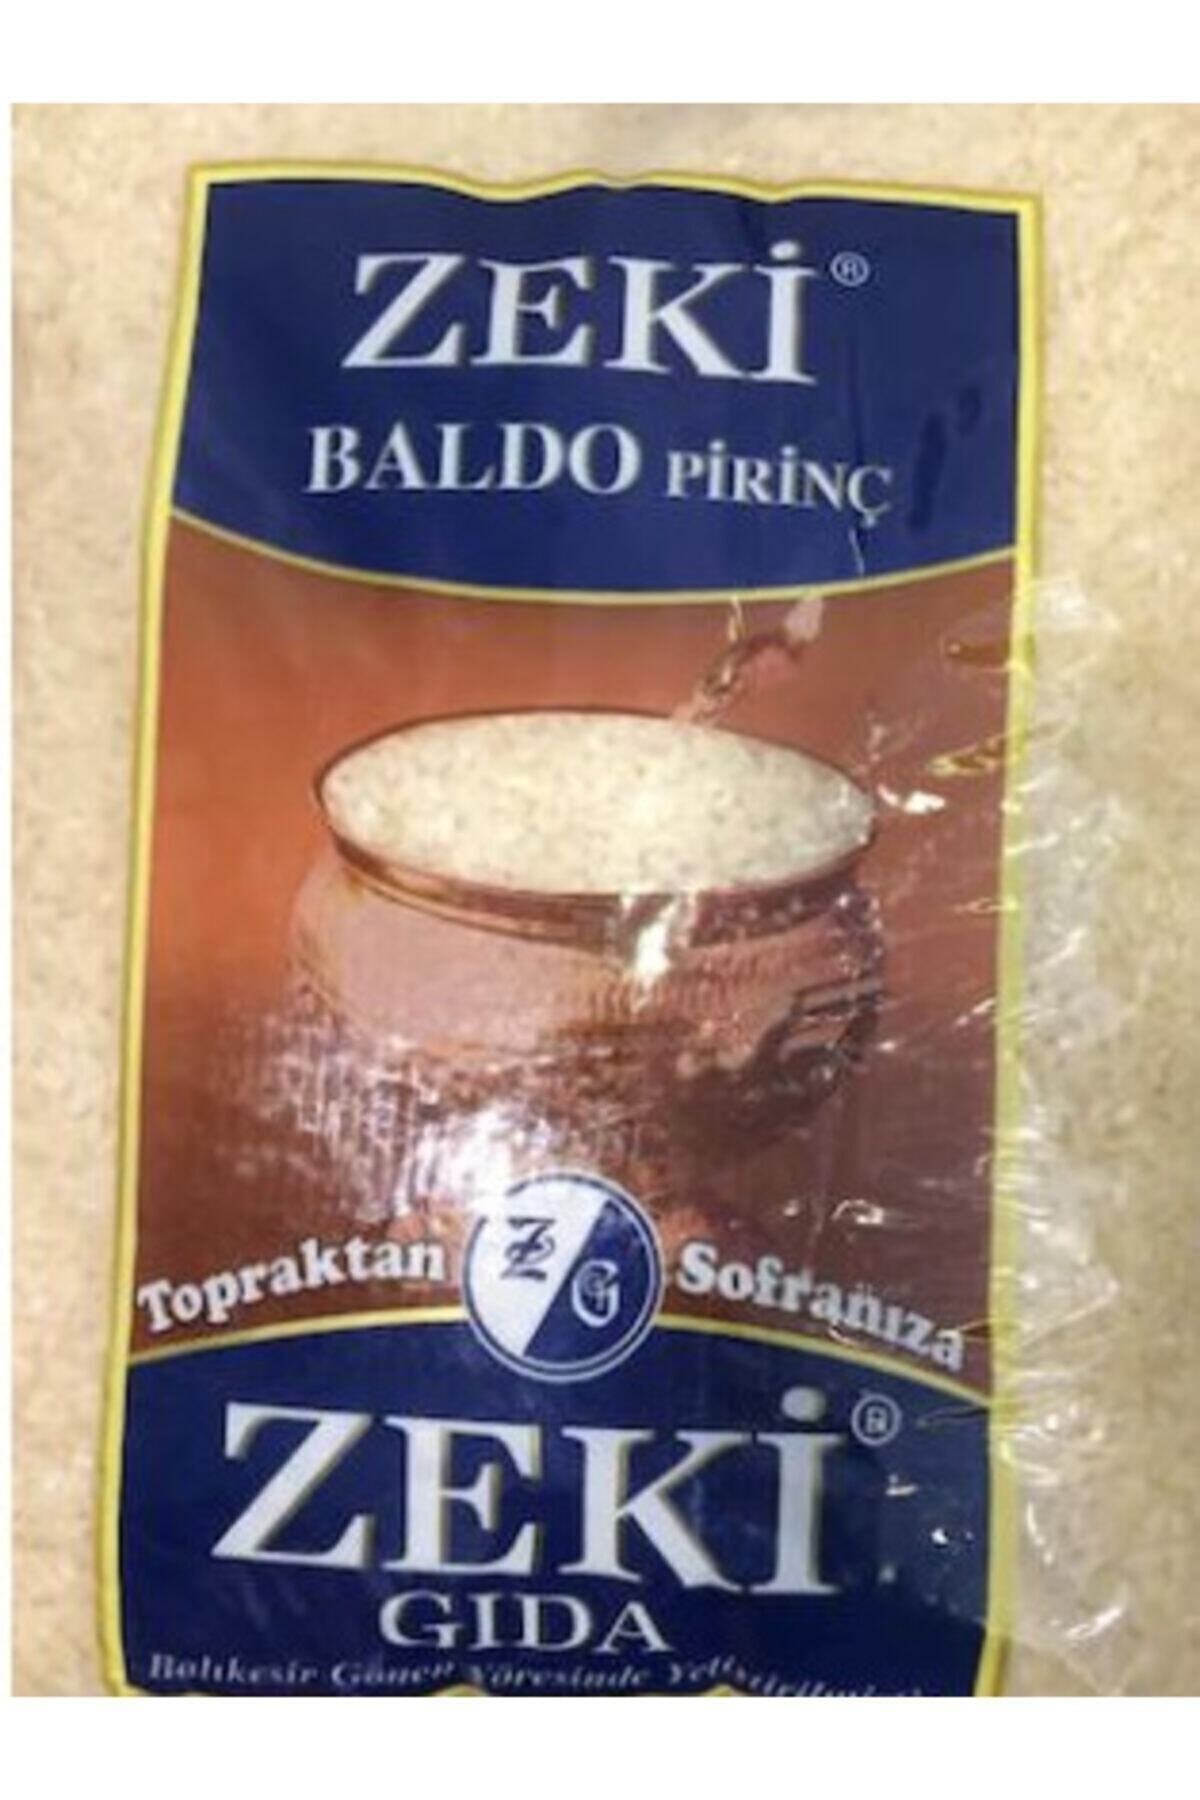 ZEKİ Baldo Pirinç 5 kg